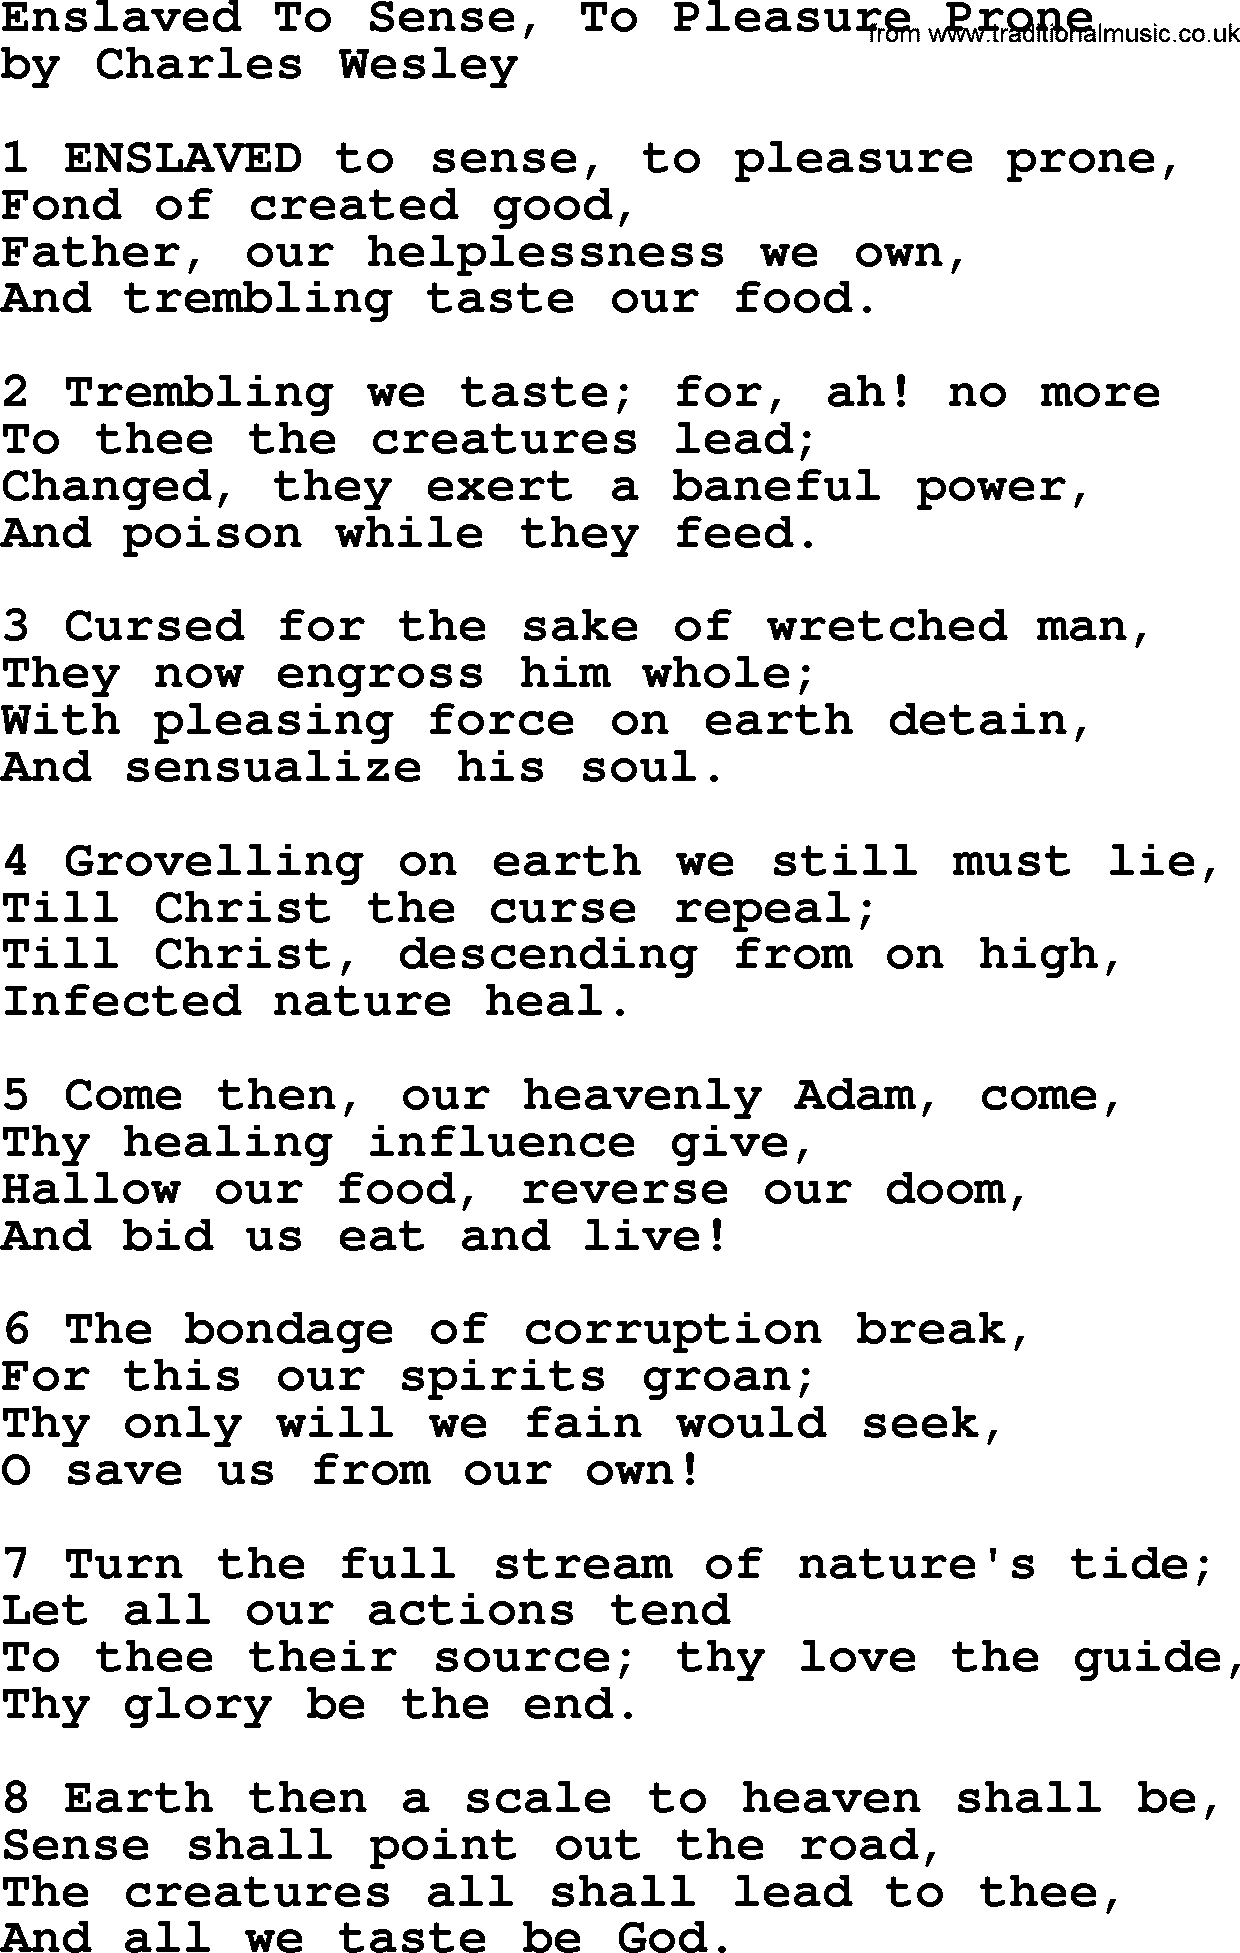 Charles Wesley hymn: Enslaved To Sense, To Pleasure Prone, lyrics